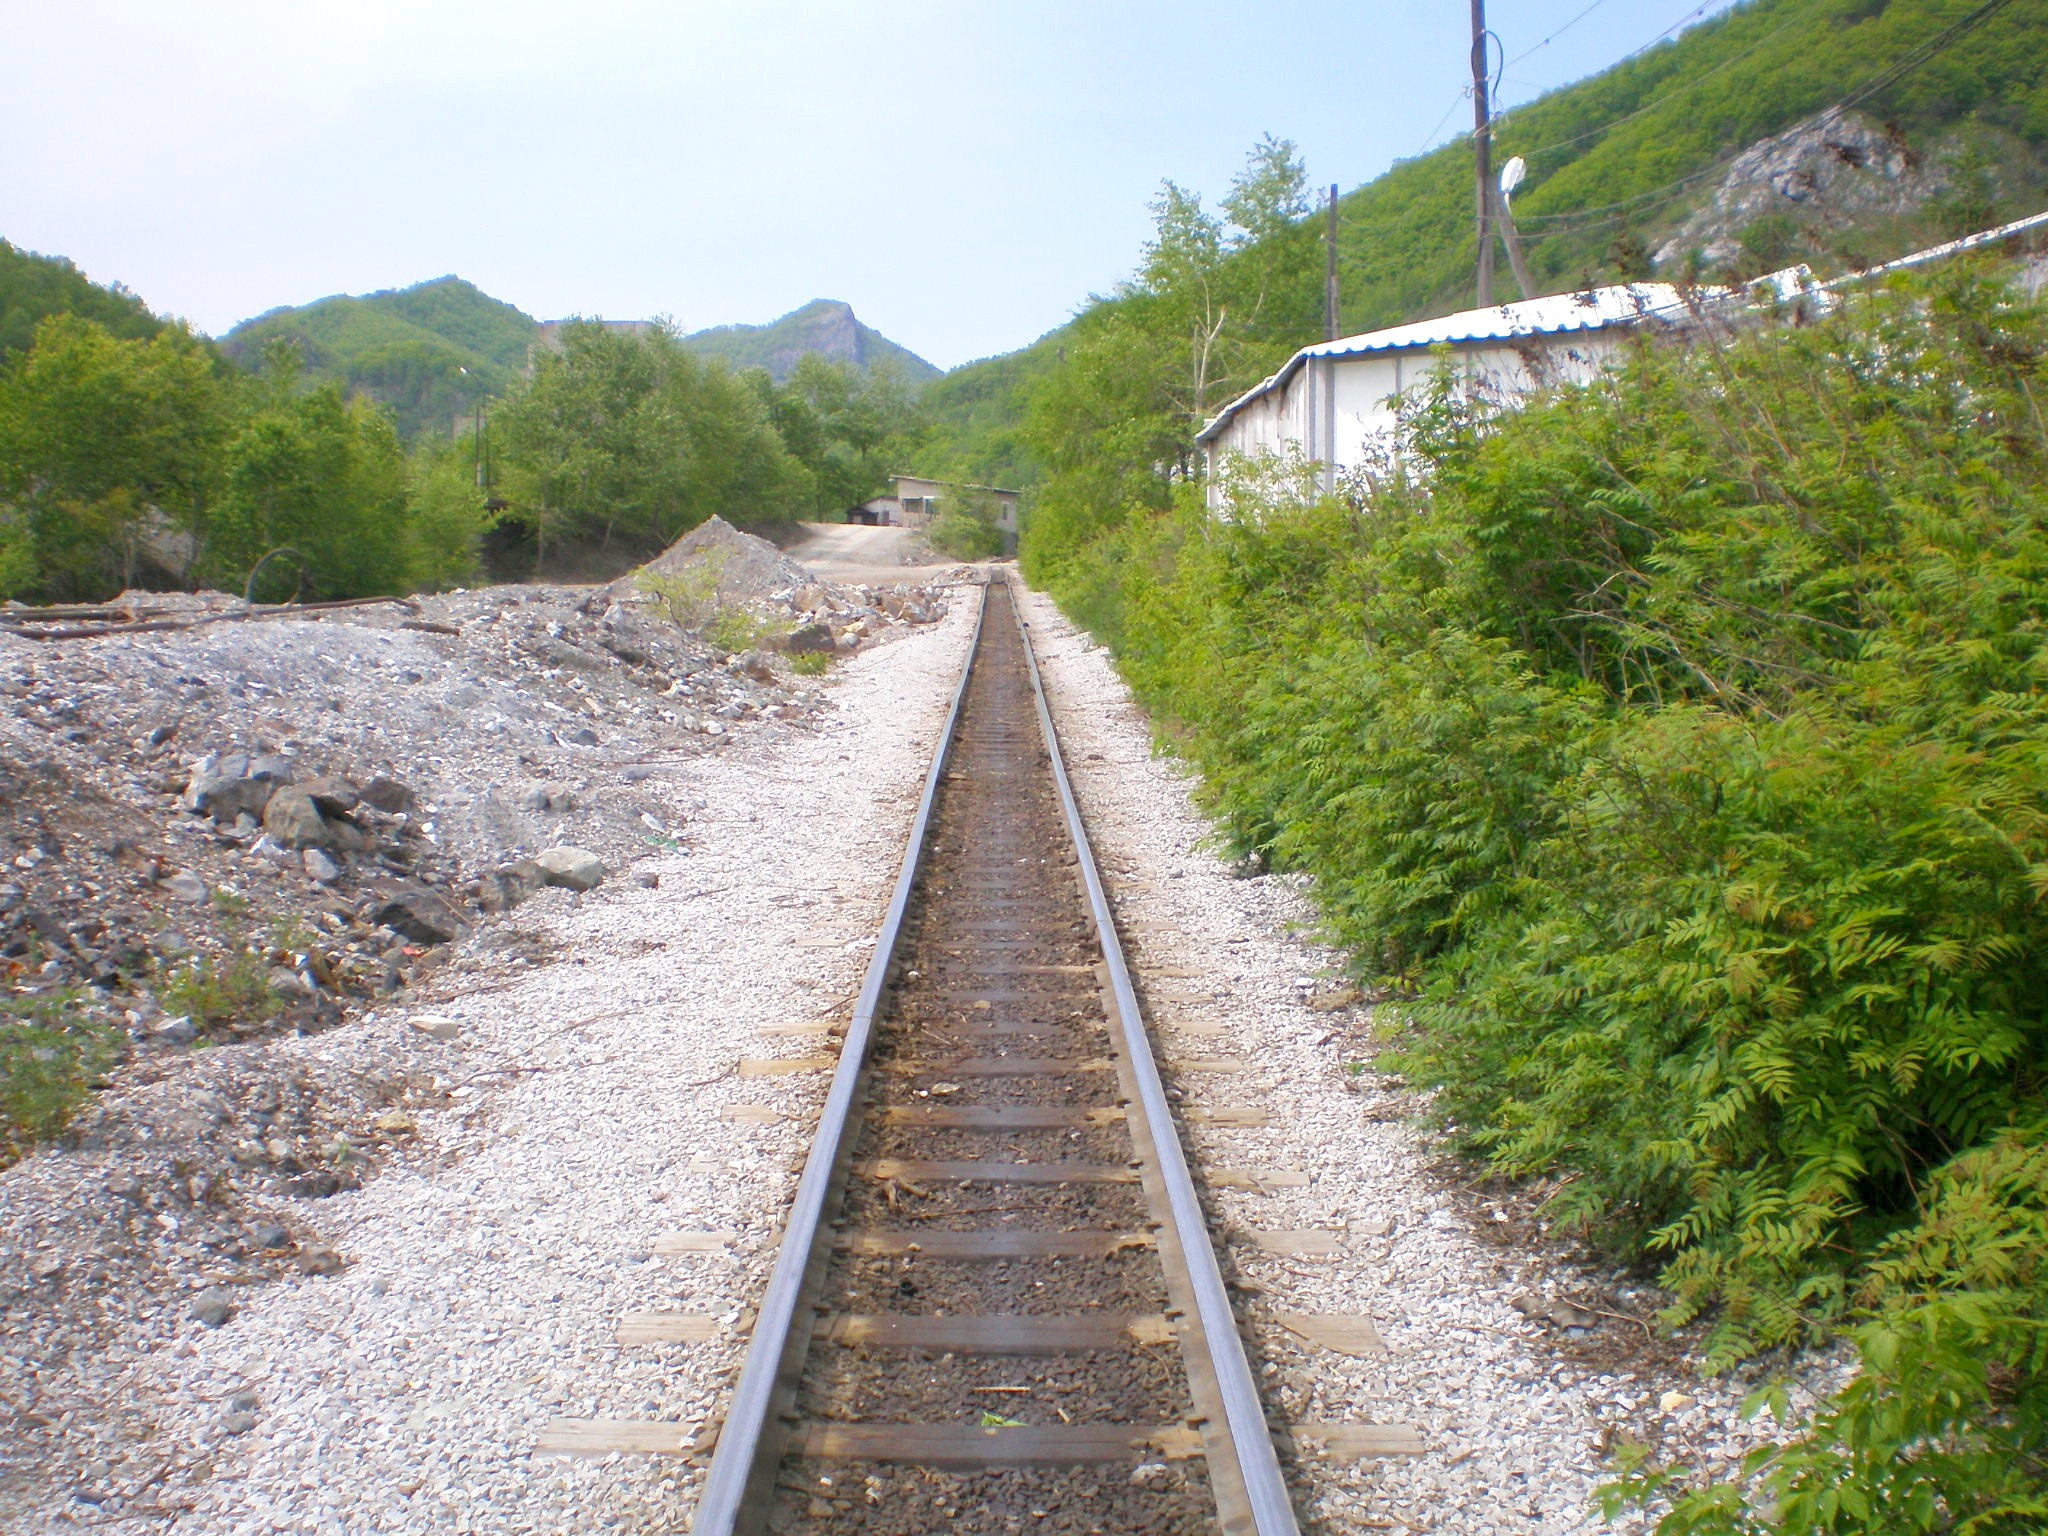 Тетюхинская узкоколейная железная дорога  —  фотографии, сделанные в 2008 году (часть 1)